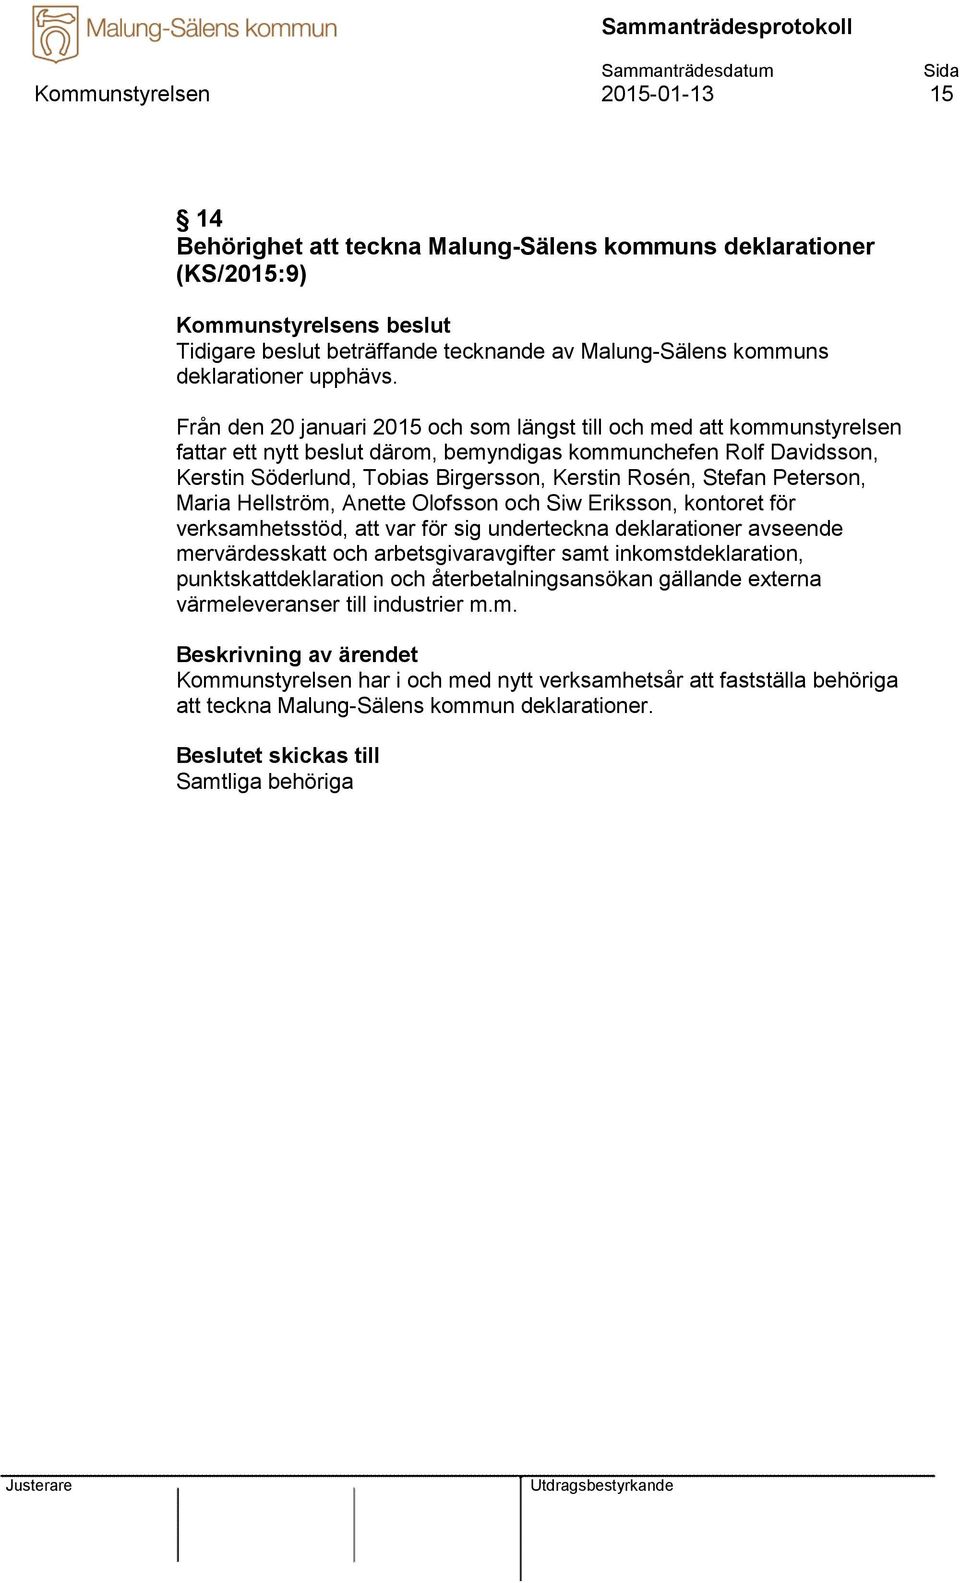 Stefan Peterson, Maria Hellström, Anette Olofsson och Siw Eriksson, kontoret för verksamhetsstöd, att var för sig underteckna deklarationer avseende mervärdesskatt och arbetsgivaravgifter samt